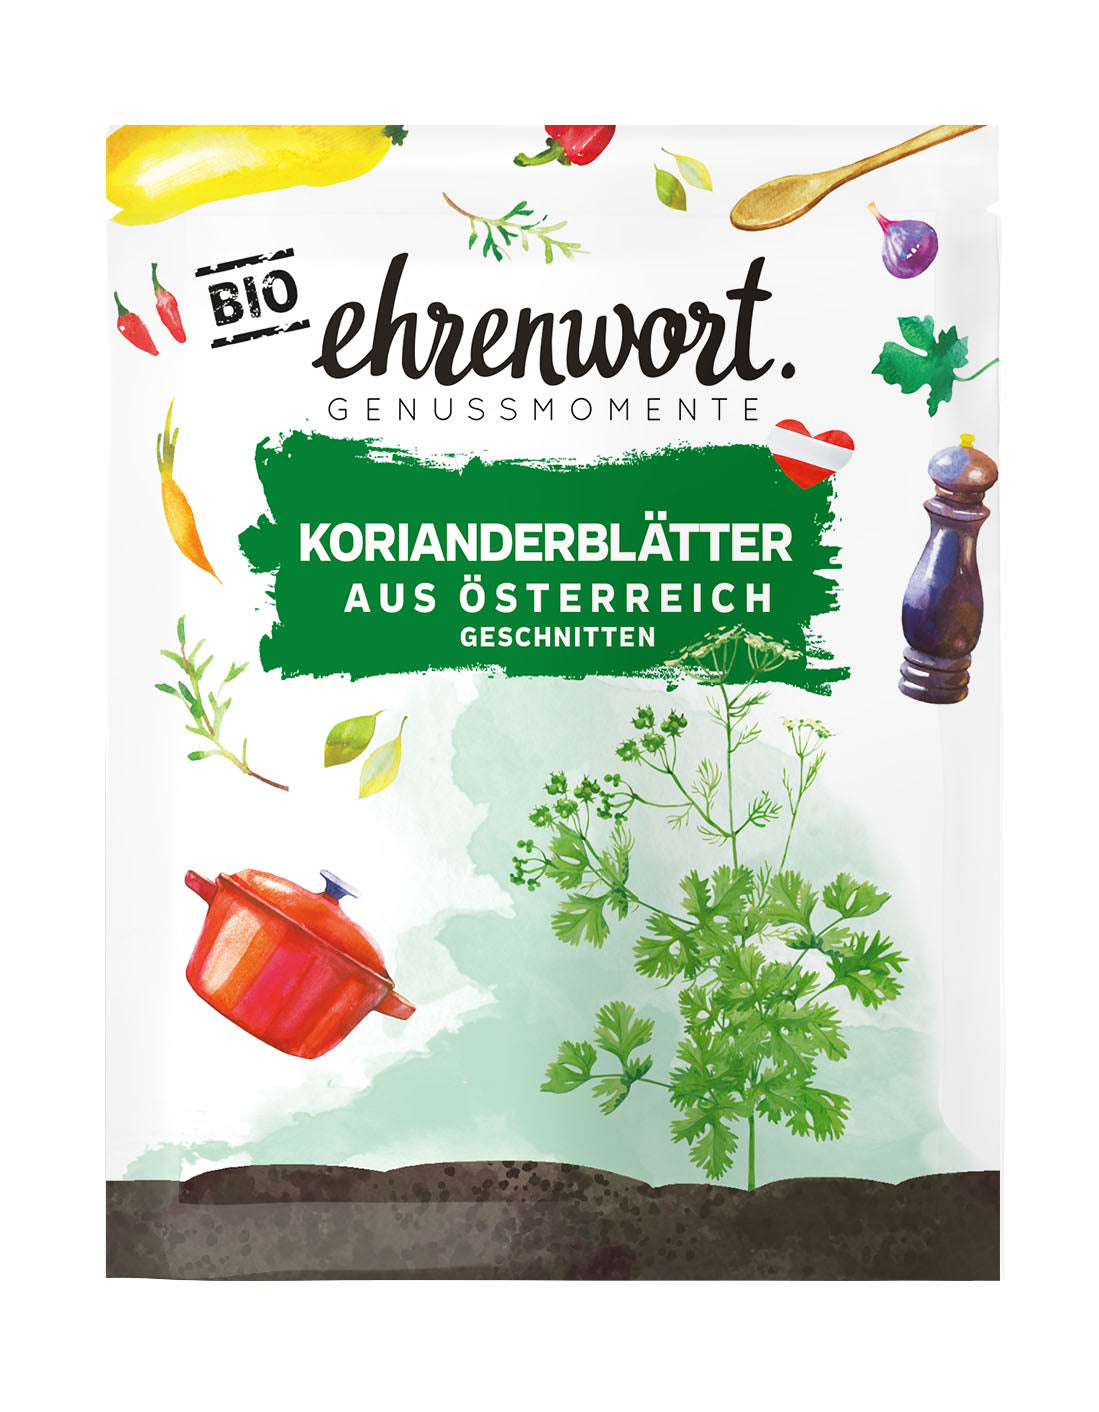 Ehrenwort Korianderblätter aus Österreich geschnitten Briefchen Produktabbildung